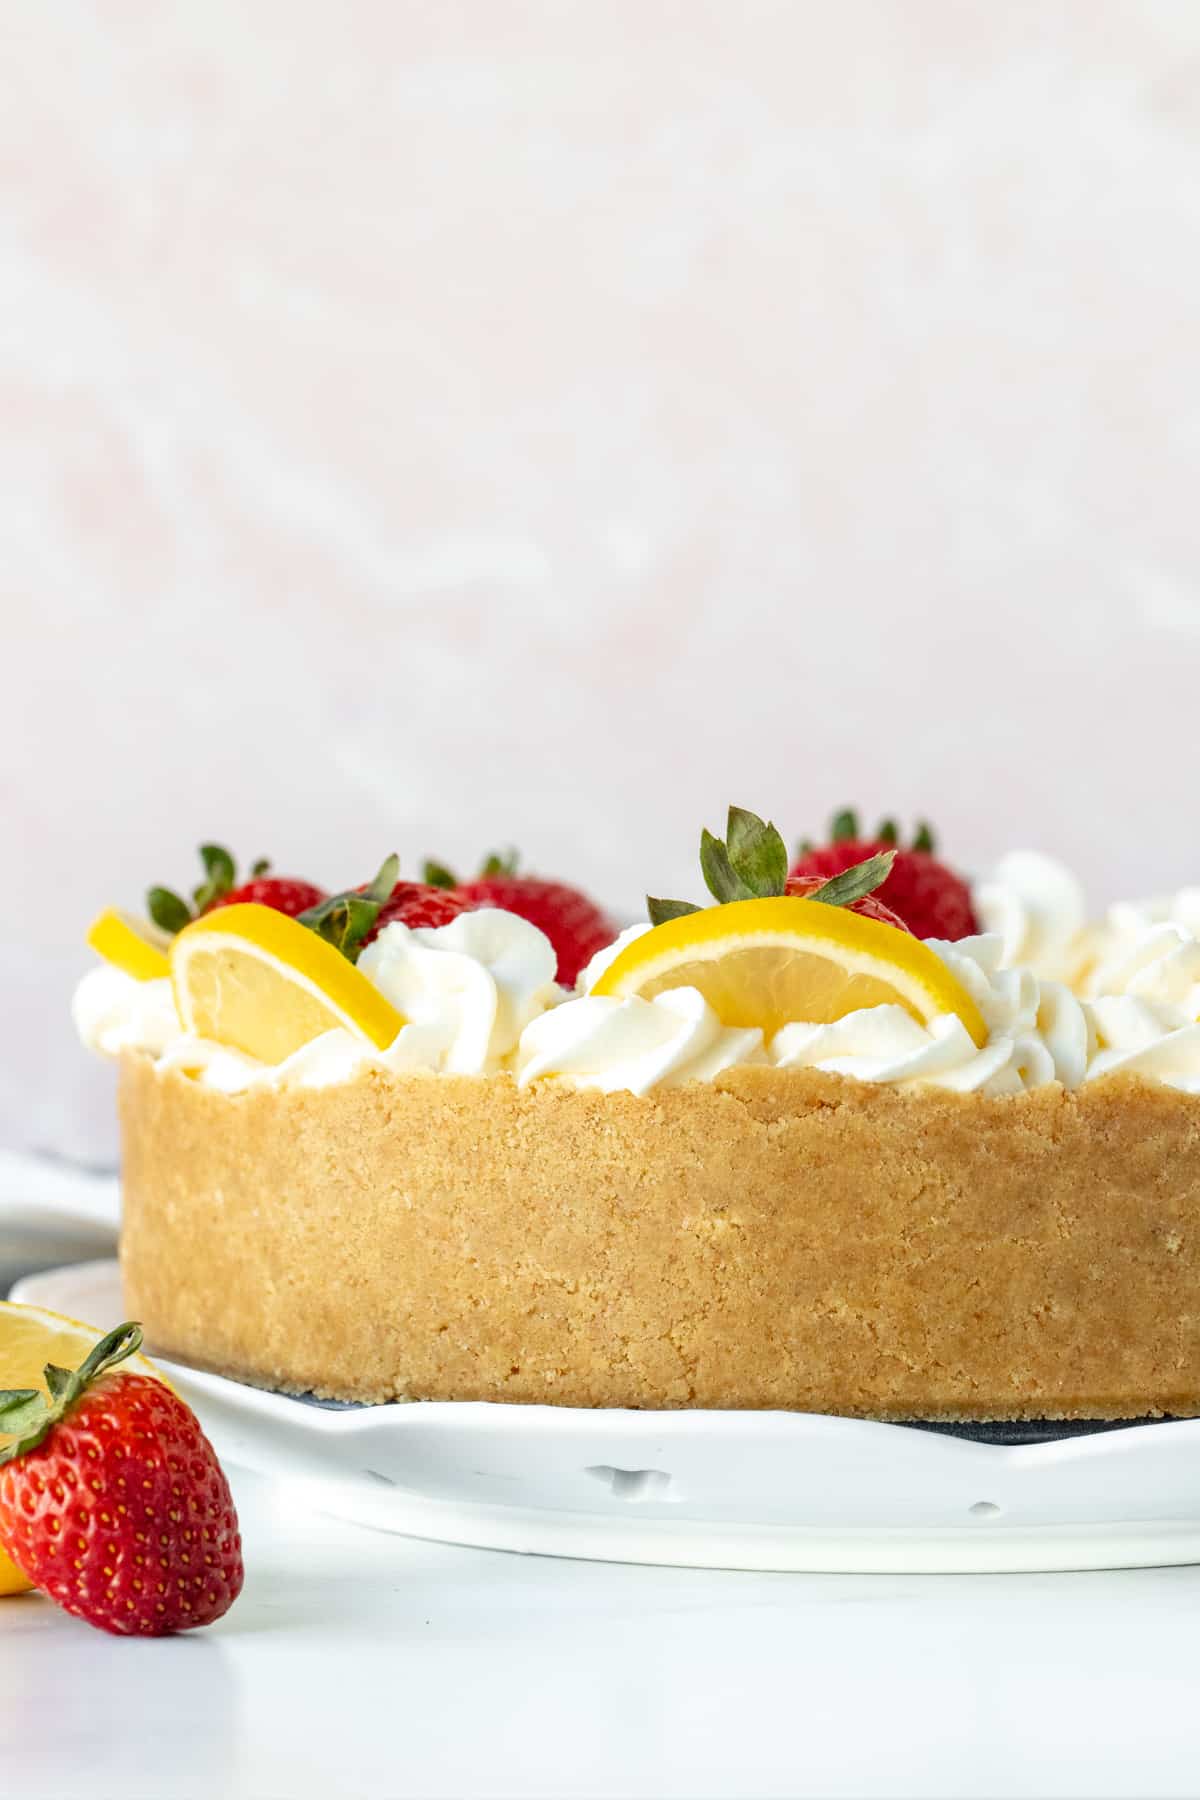 9-inch round no-bake lemon cheesecake with graham crust around the edges.